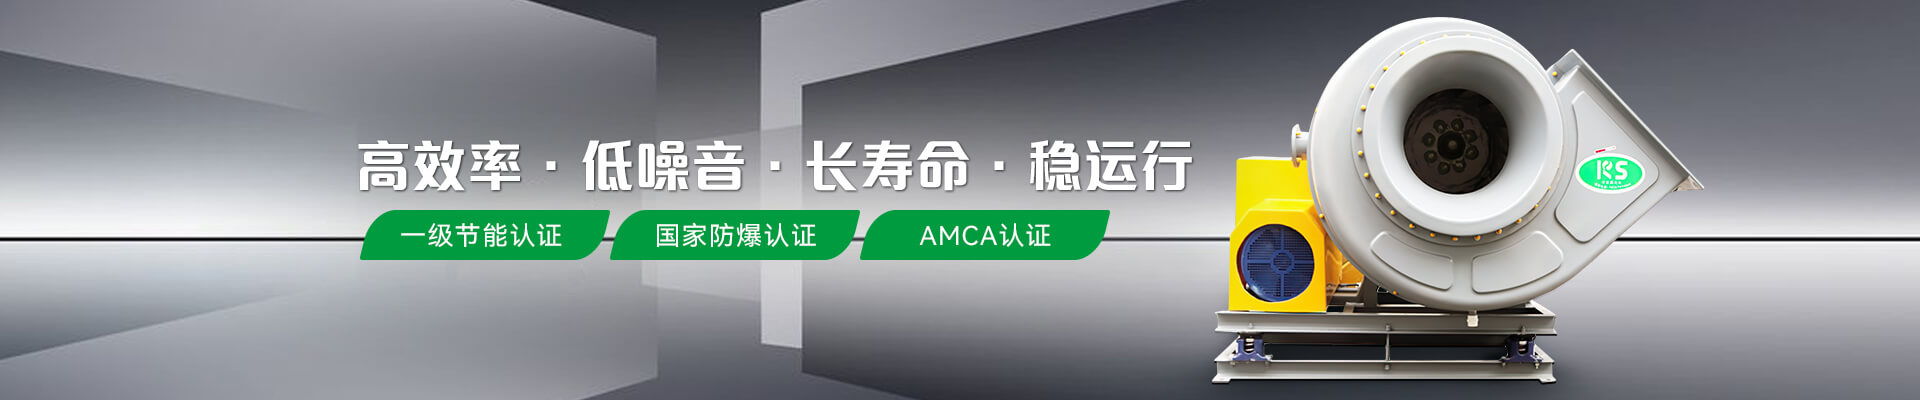 可(kě)瑞斯风机节能(néng)认证防爆认证AMCA认证